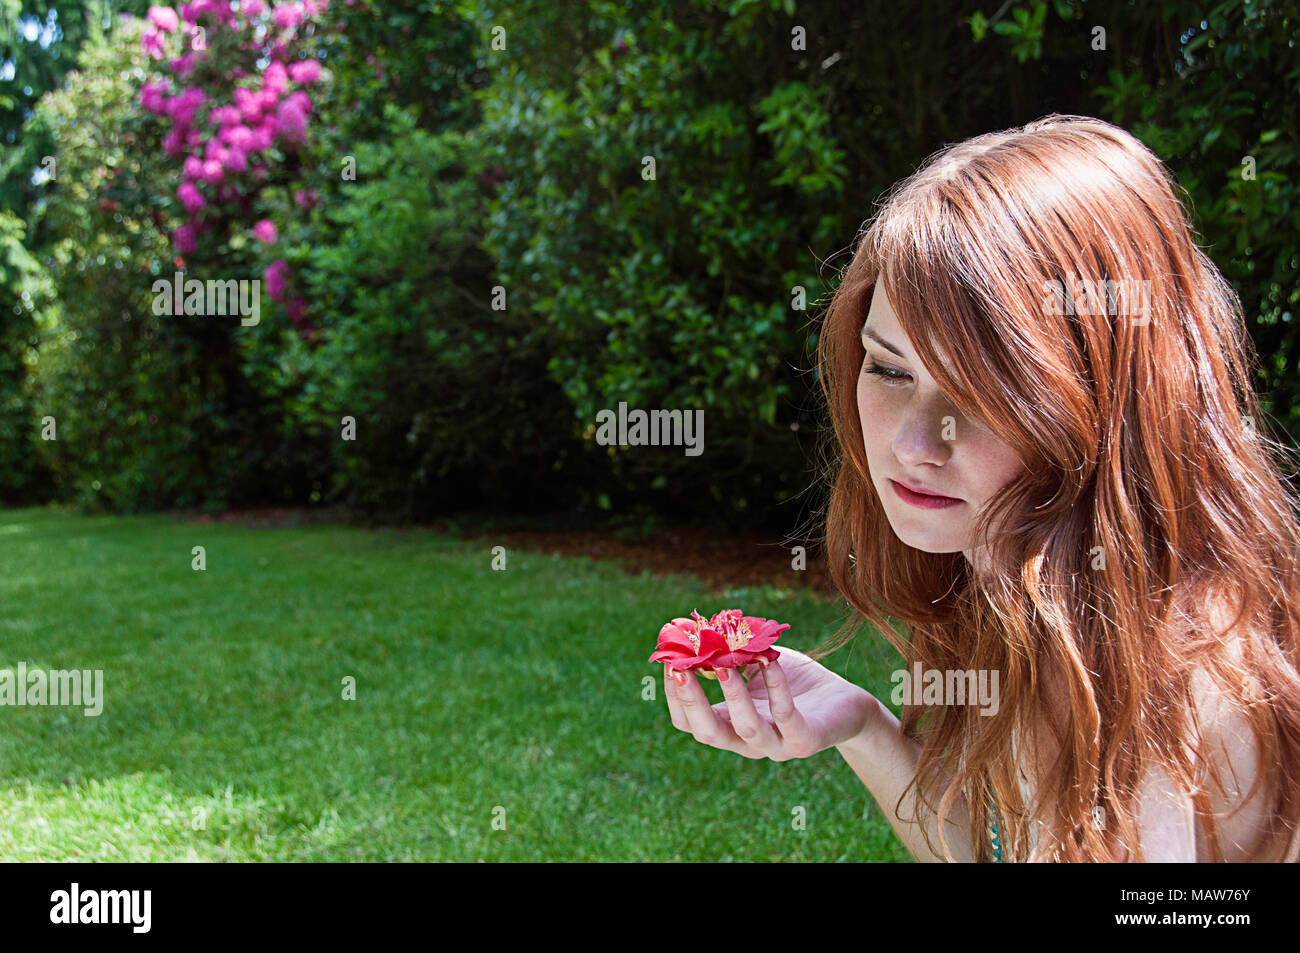 Una donna con i capelli rossi seduto in un giardino tenendo un fiore. Foto Stock